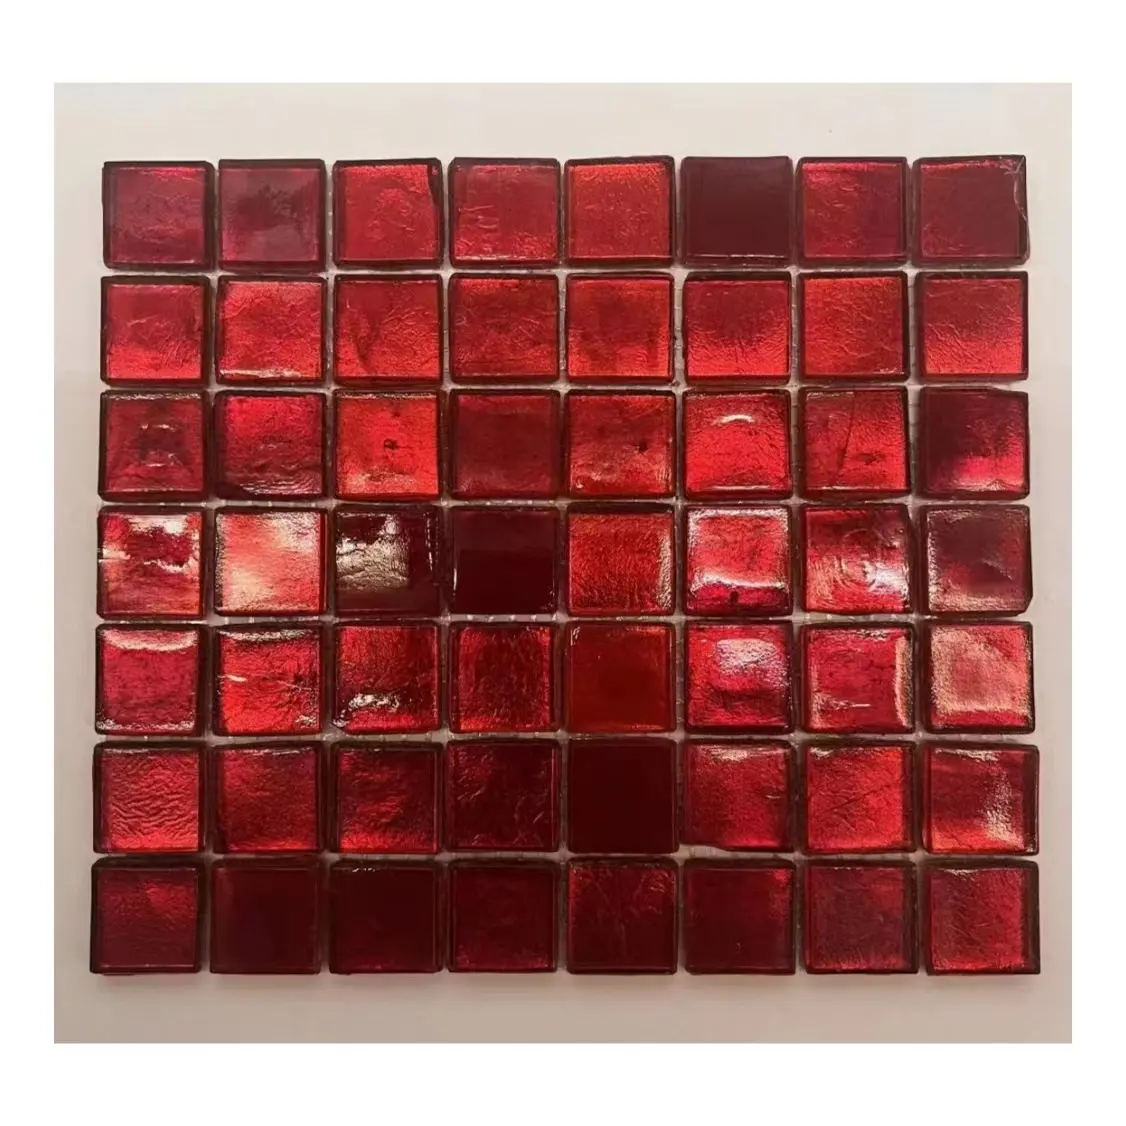 Großhandelspreis hochwertige rote Glas-Mosaikfliesen für Wanddekoration erstklassige Wandfliese Bar Bühne Dekor